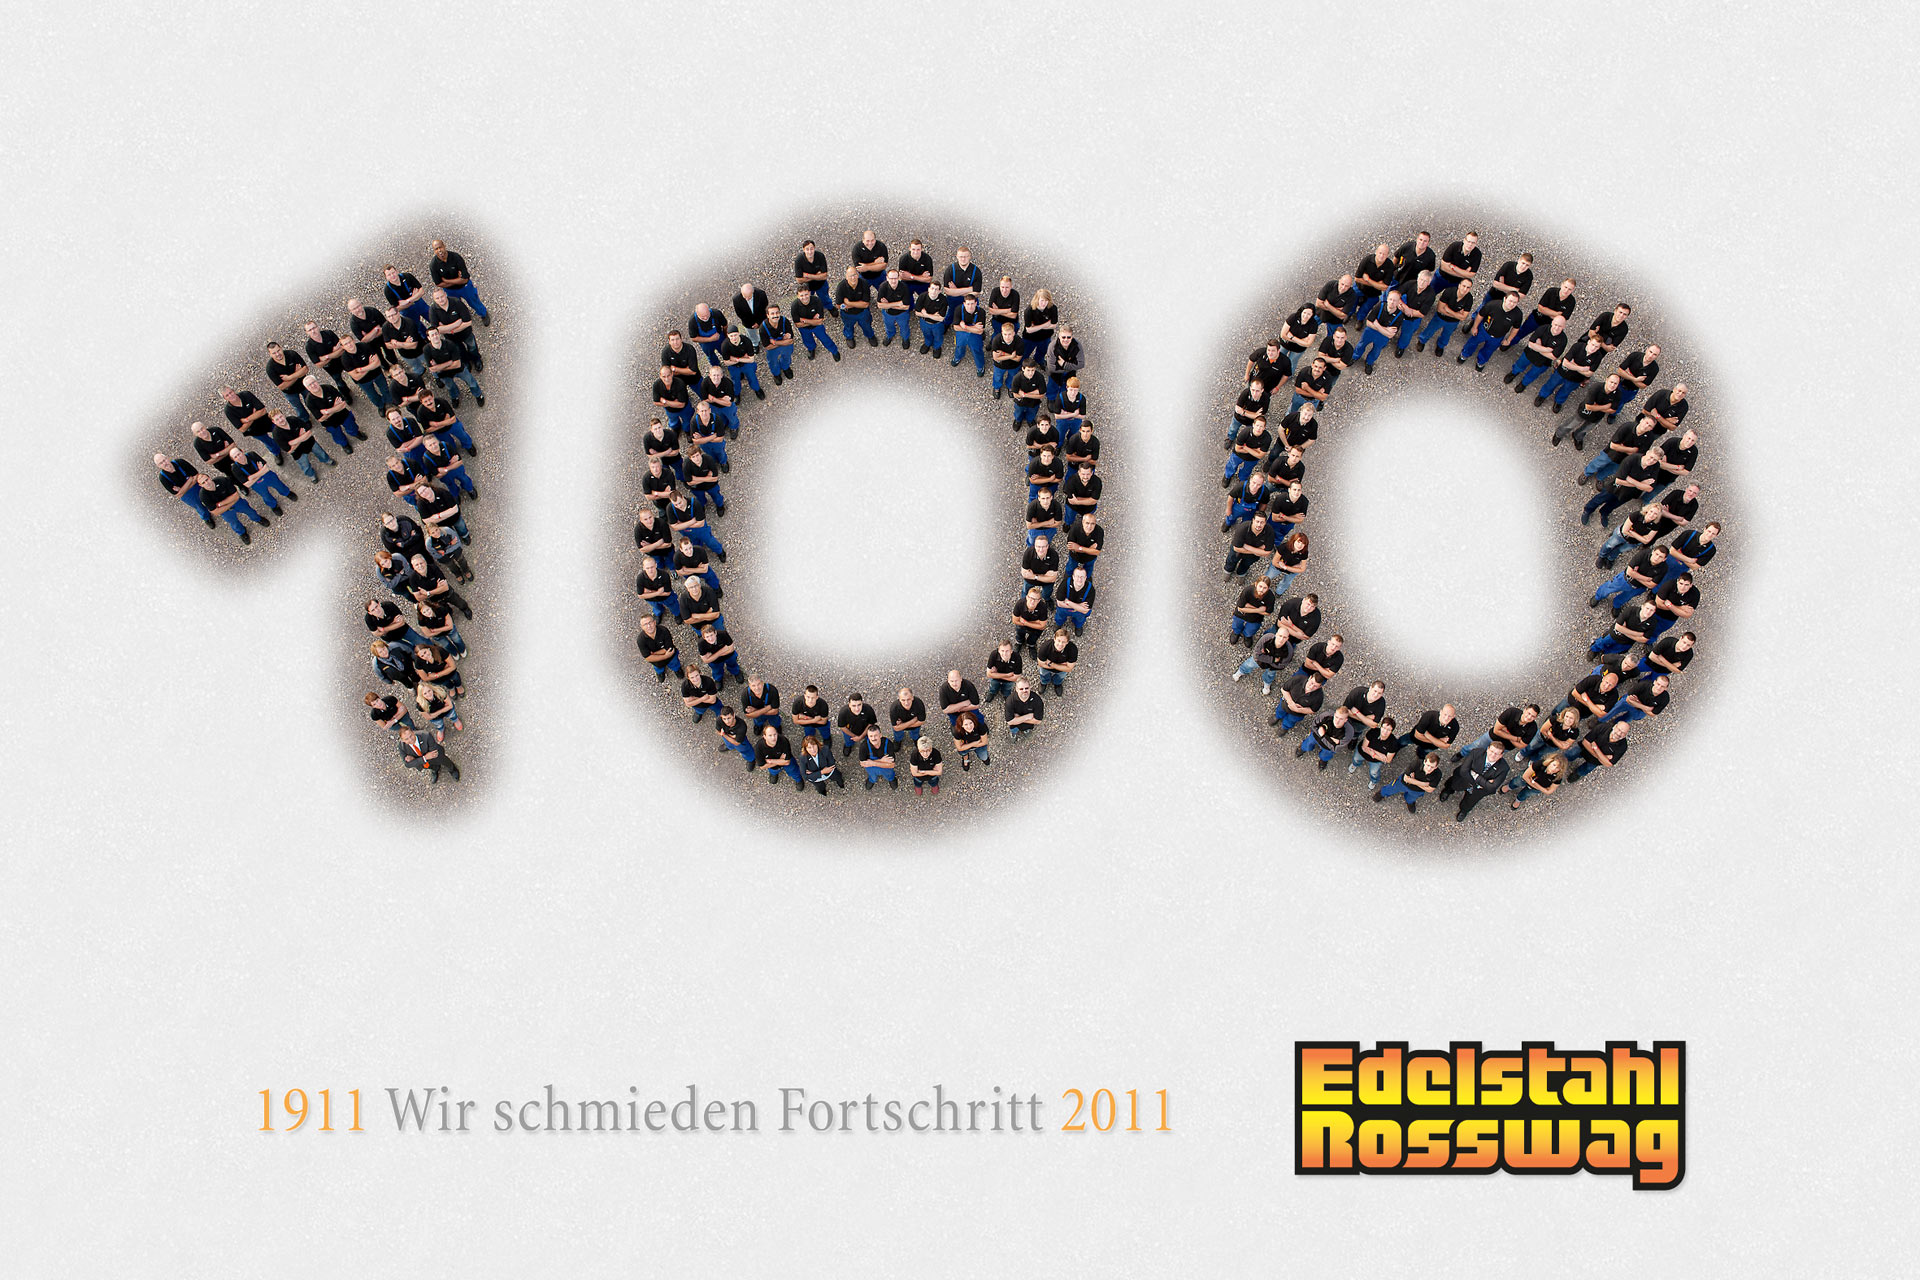 2011: 100 années de Edelstahl Rosswag